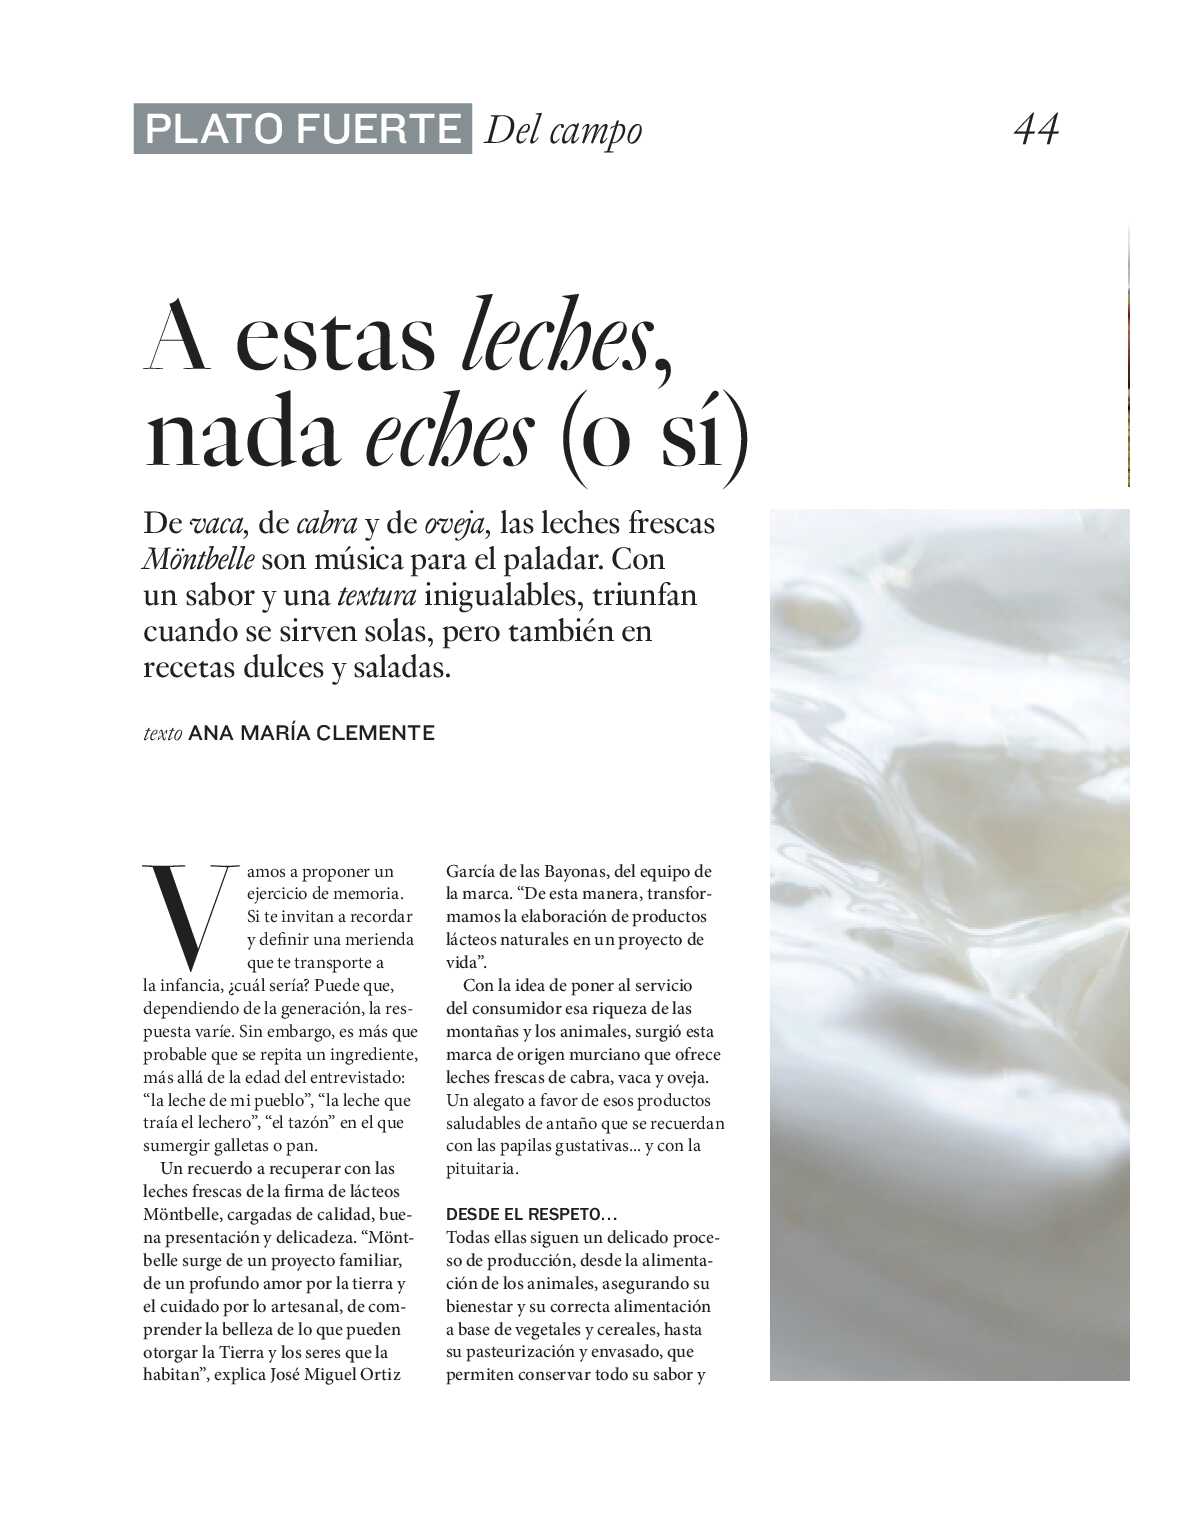 Gourmet magazine El Corte Inglés. Página 44